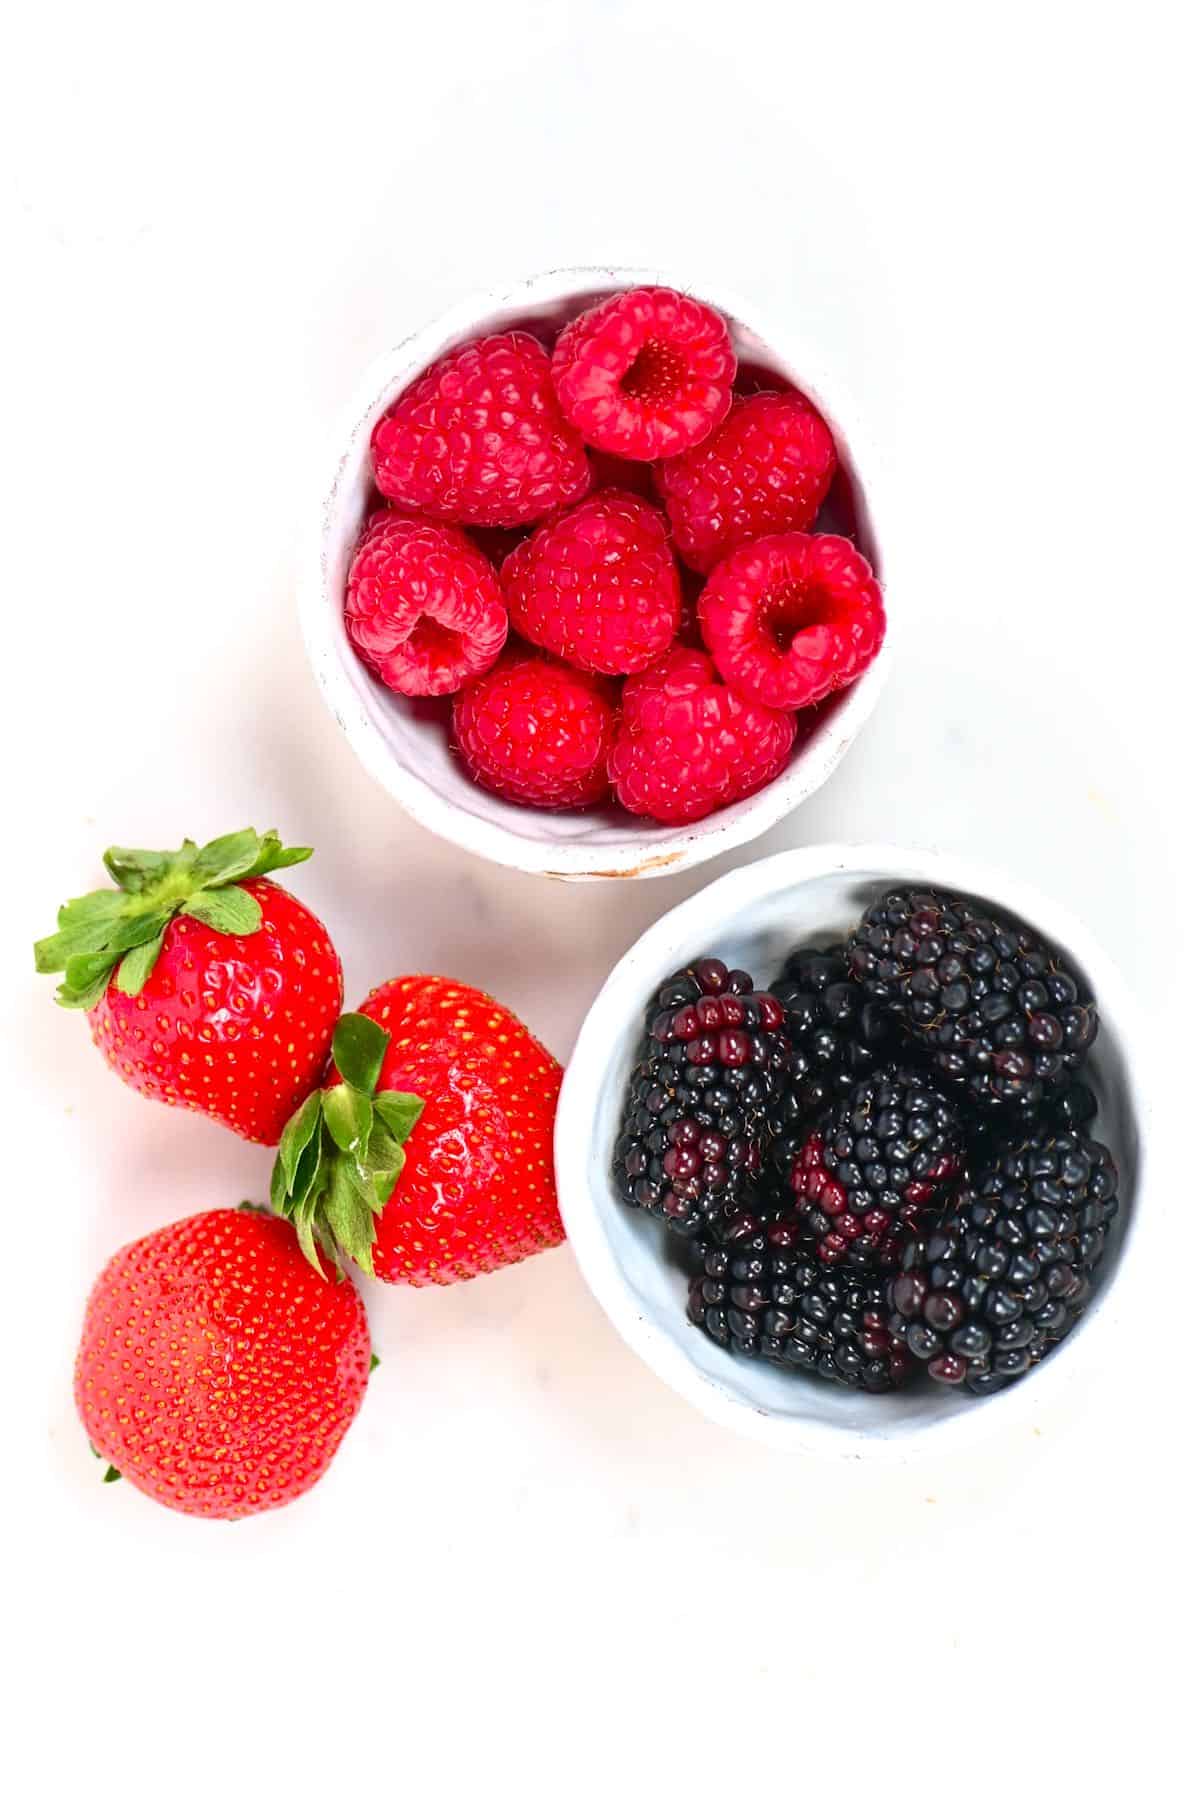 strawberries raspberries blackberries